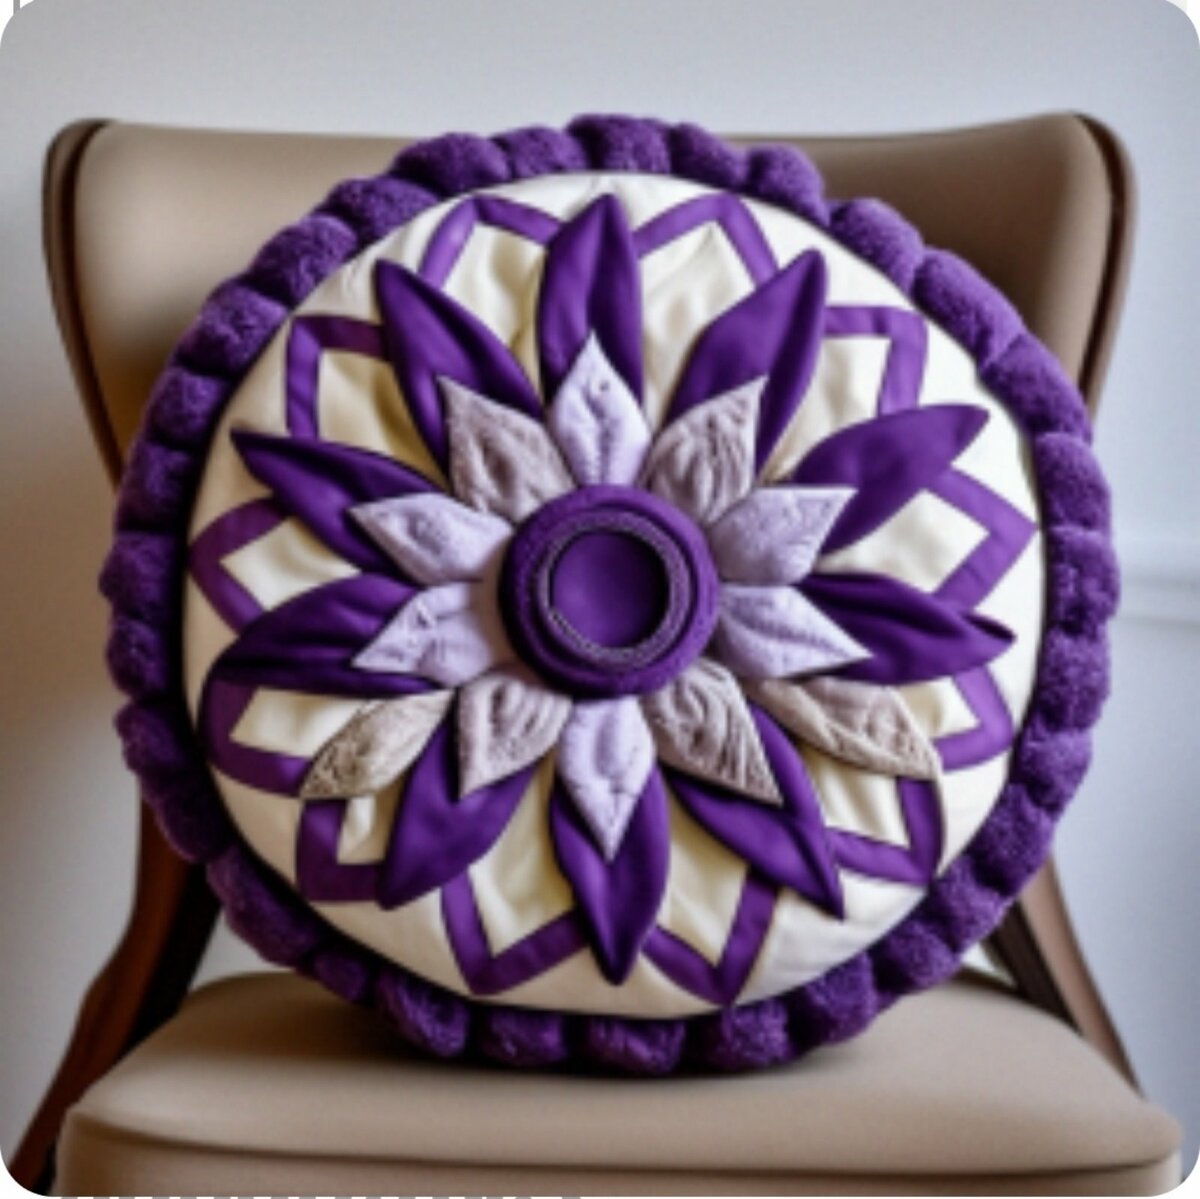 Побалуйте себя красотой и роскошью потрясающей коллекции подушек с изображением нежных цветов.-7-3